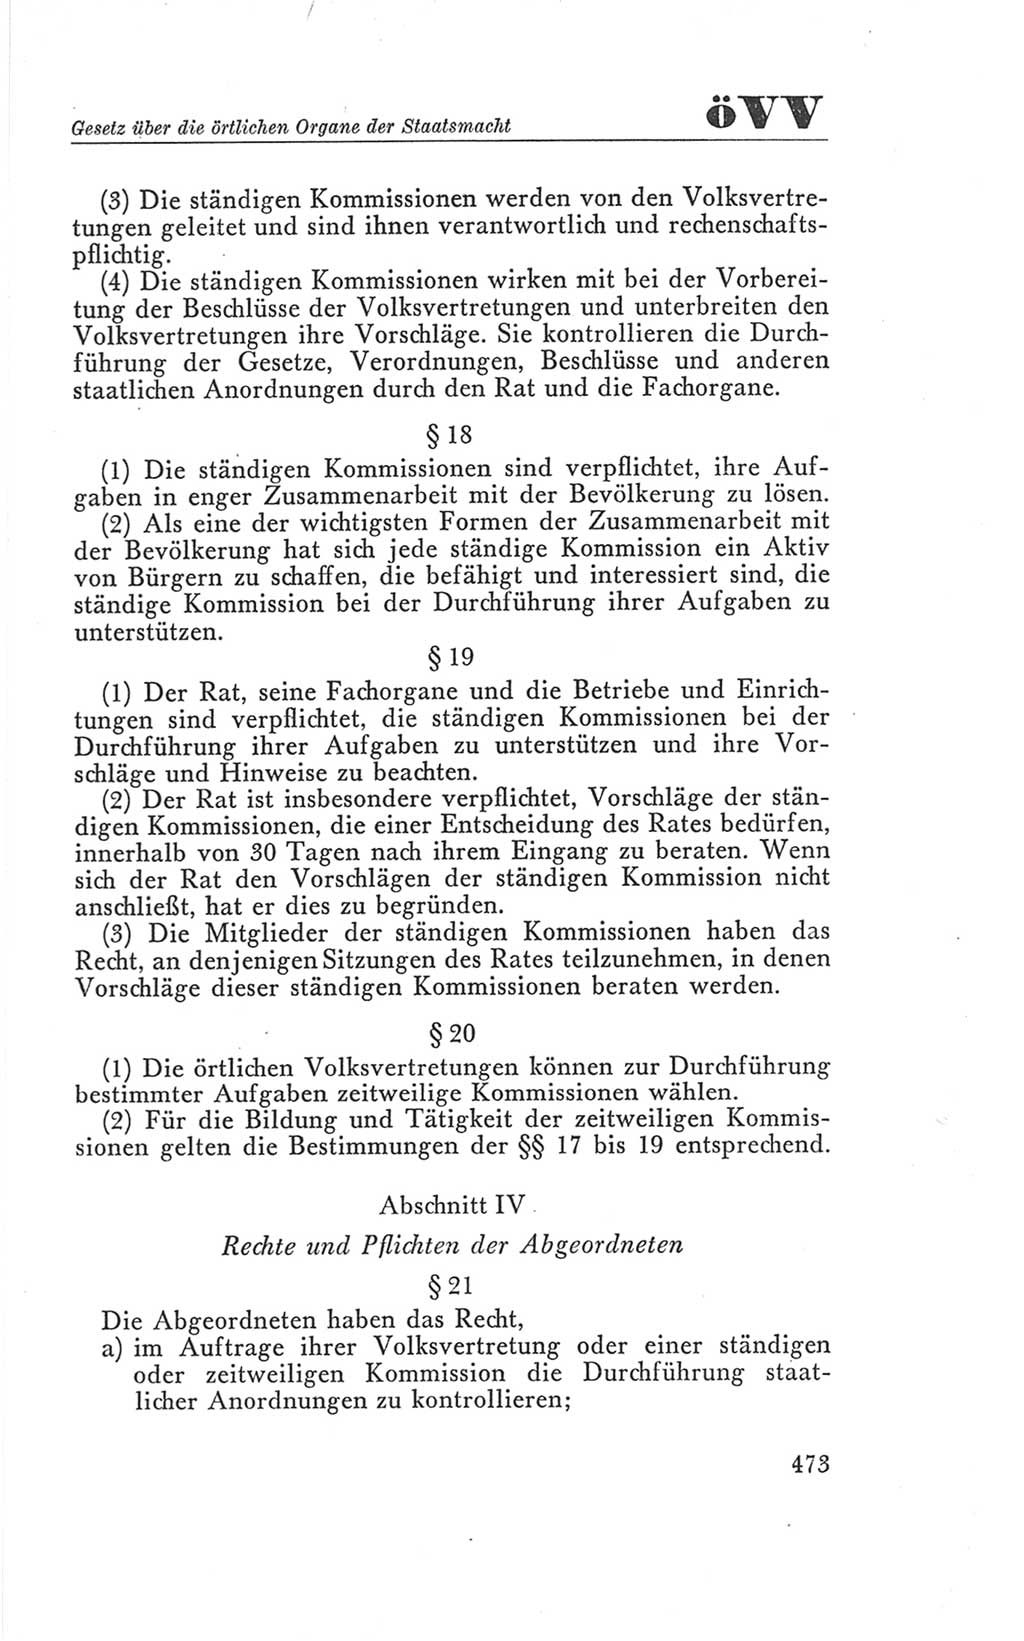 Handbuch der Volkskammer (VK) der Deutschen Demokratischen Republik (DDR), 3. Wahlperiode 1958-1963, Seite 473 (Hdb. VK. DDR 3. WP. 1958-1963, S. 473)